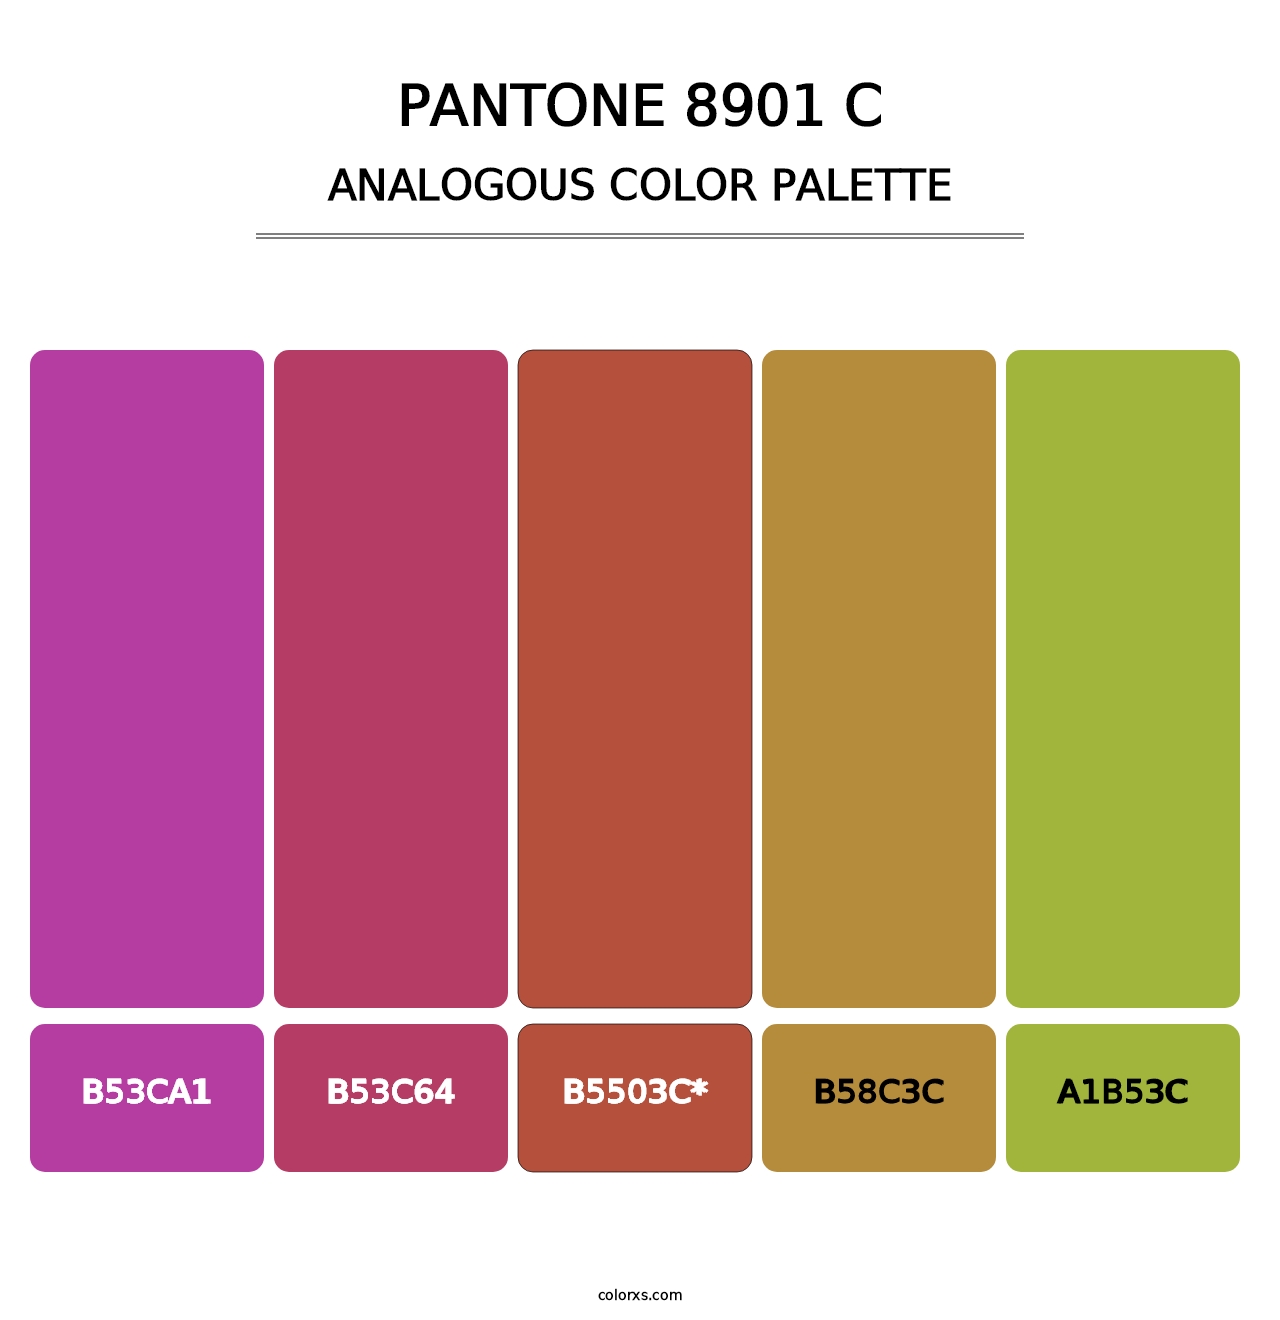 PANTONE 8901 C - Analogous Color Palette